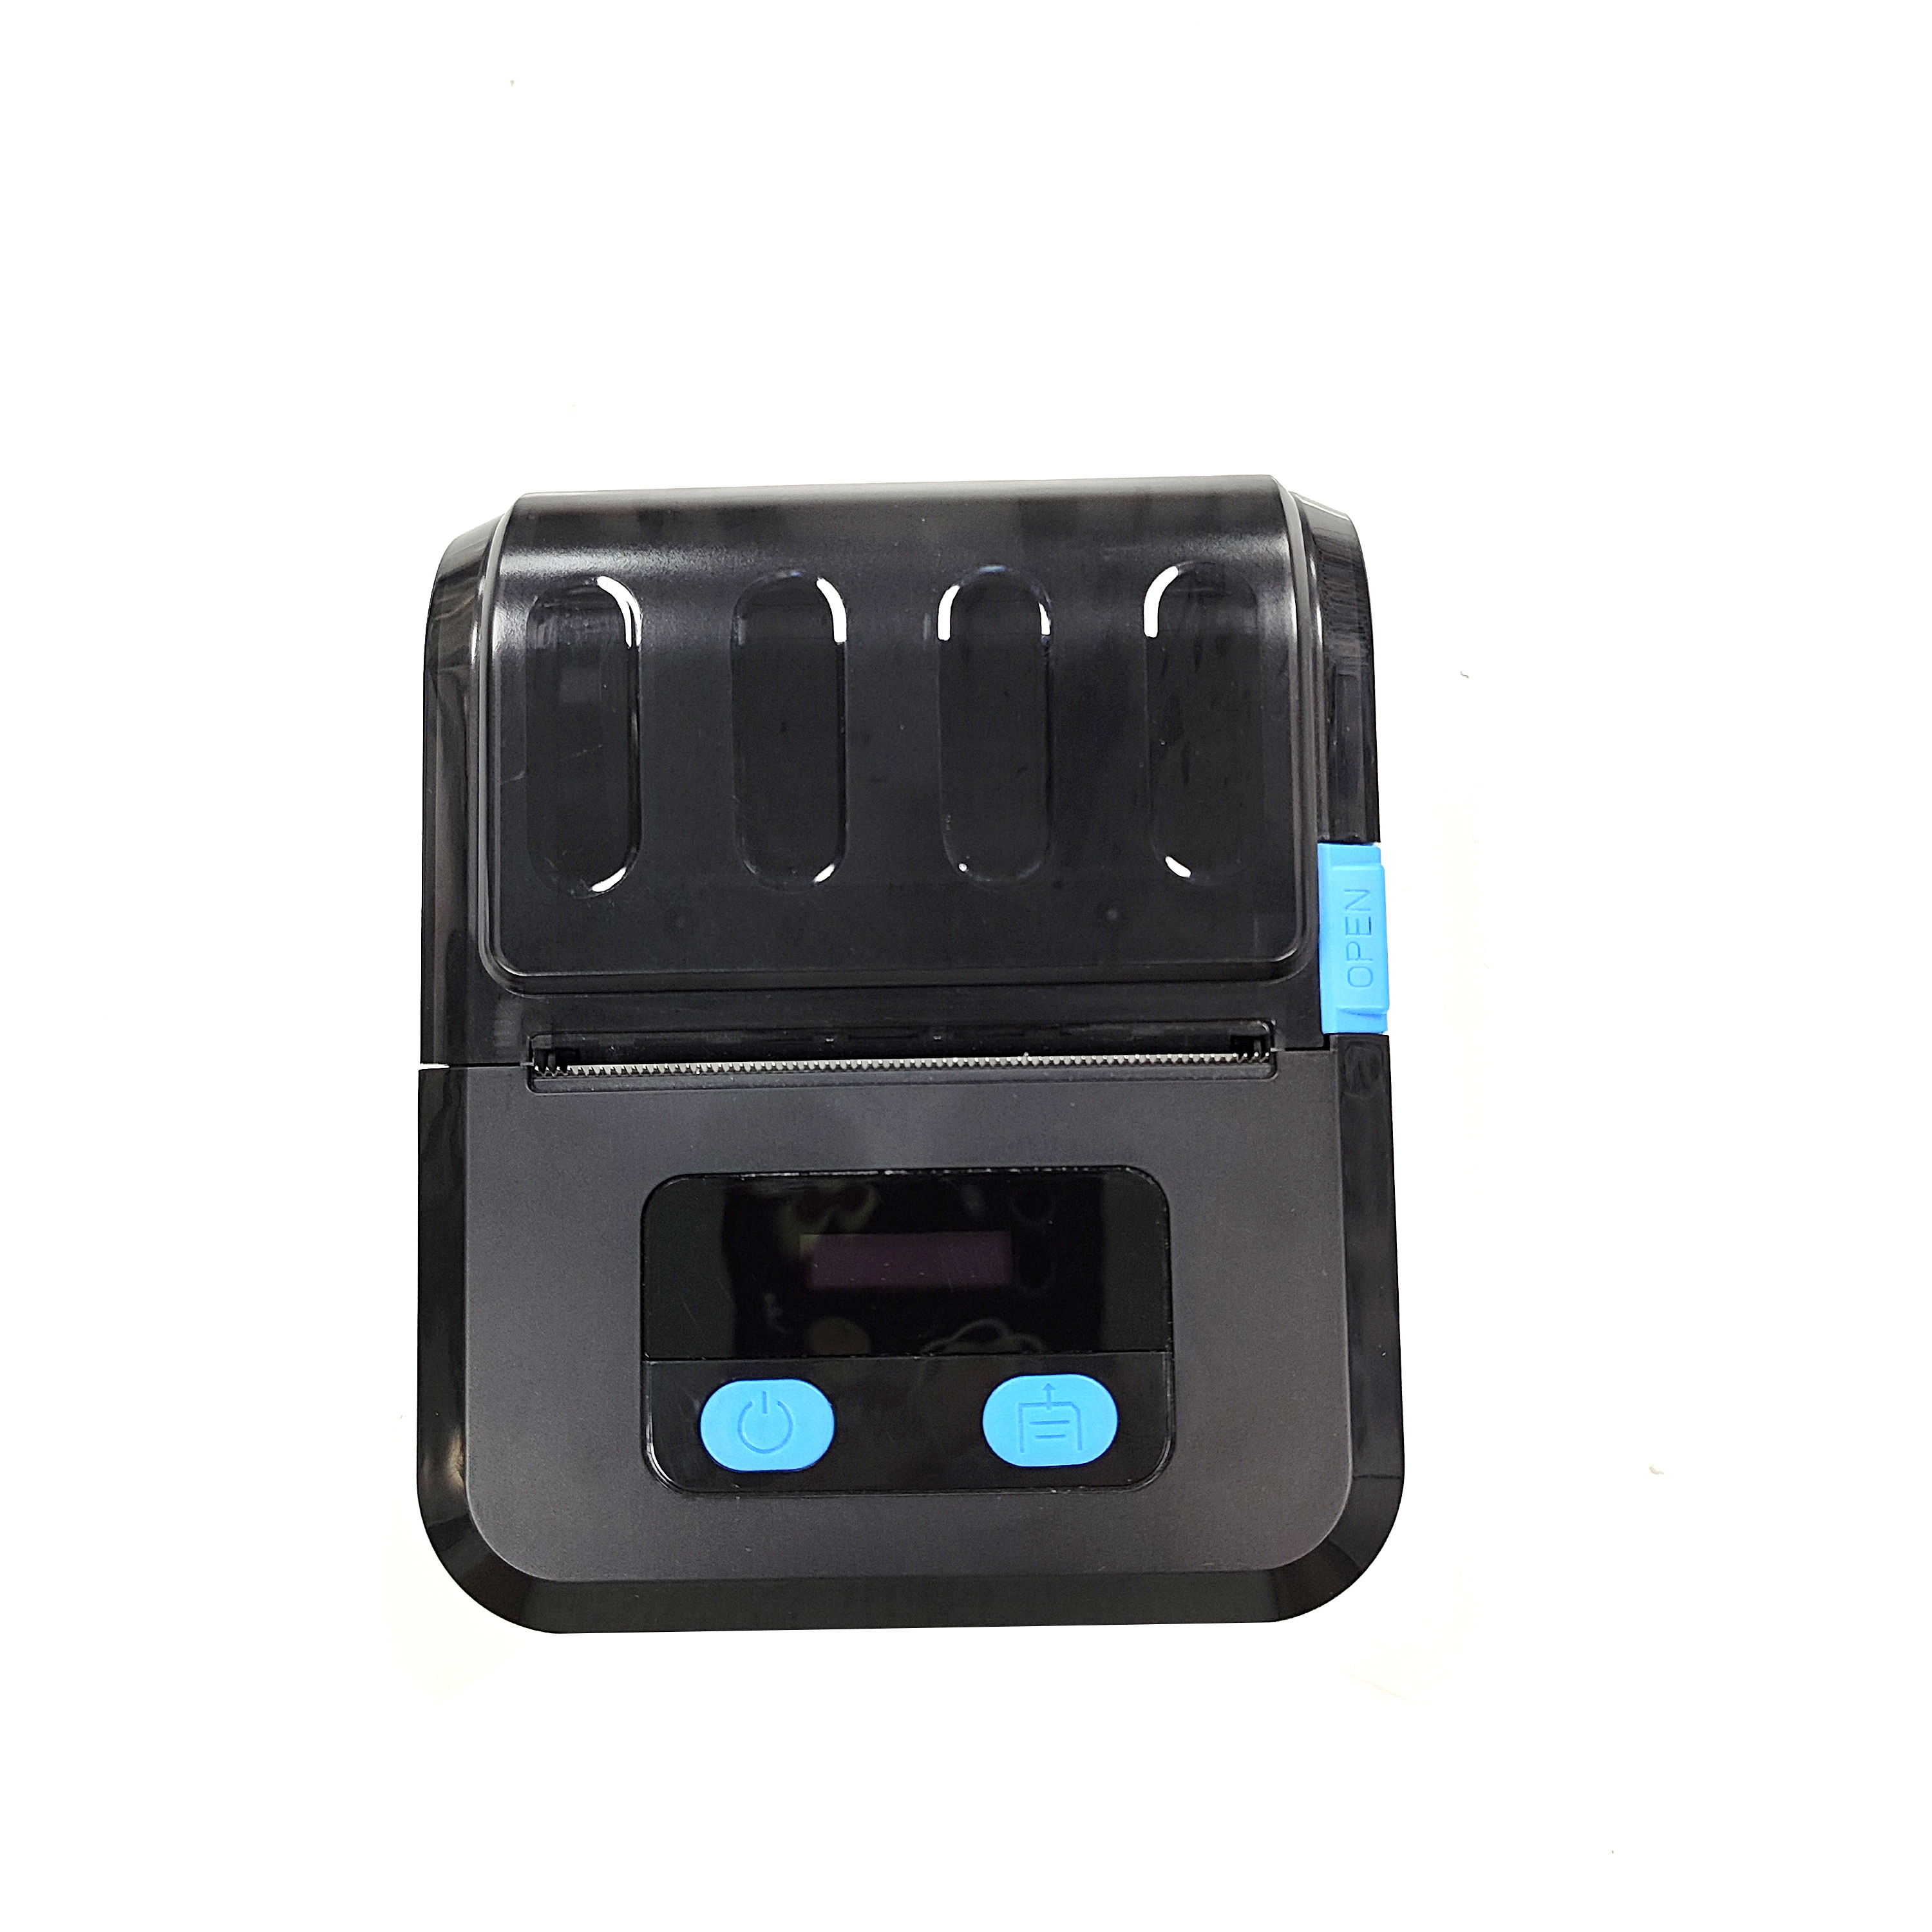 (OCBP-M89) mini impresora de código de barras usb inalámbrica bluetooth de mano de 50mm de diámetro con software libre negro